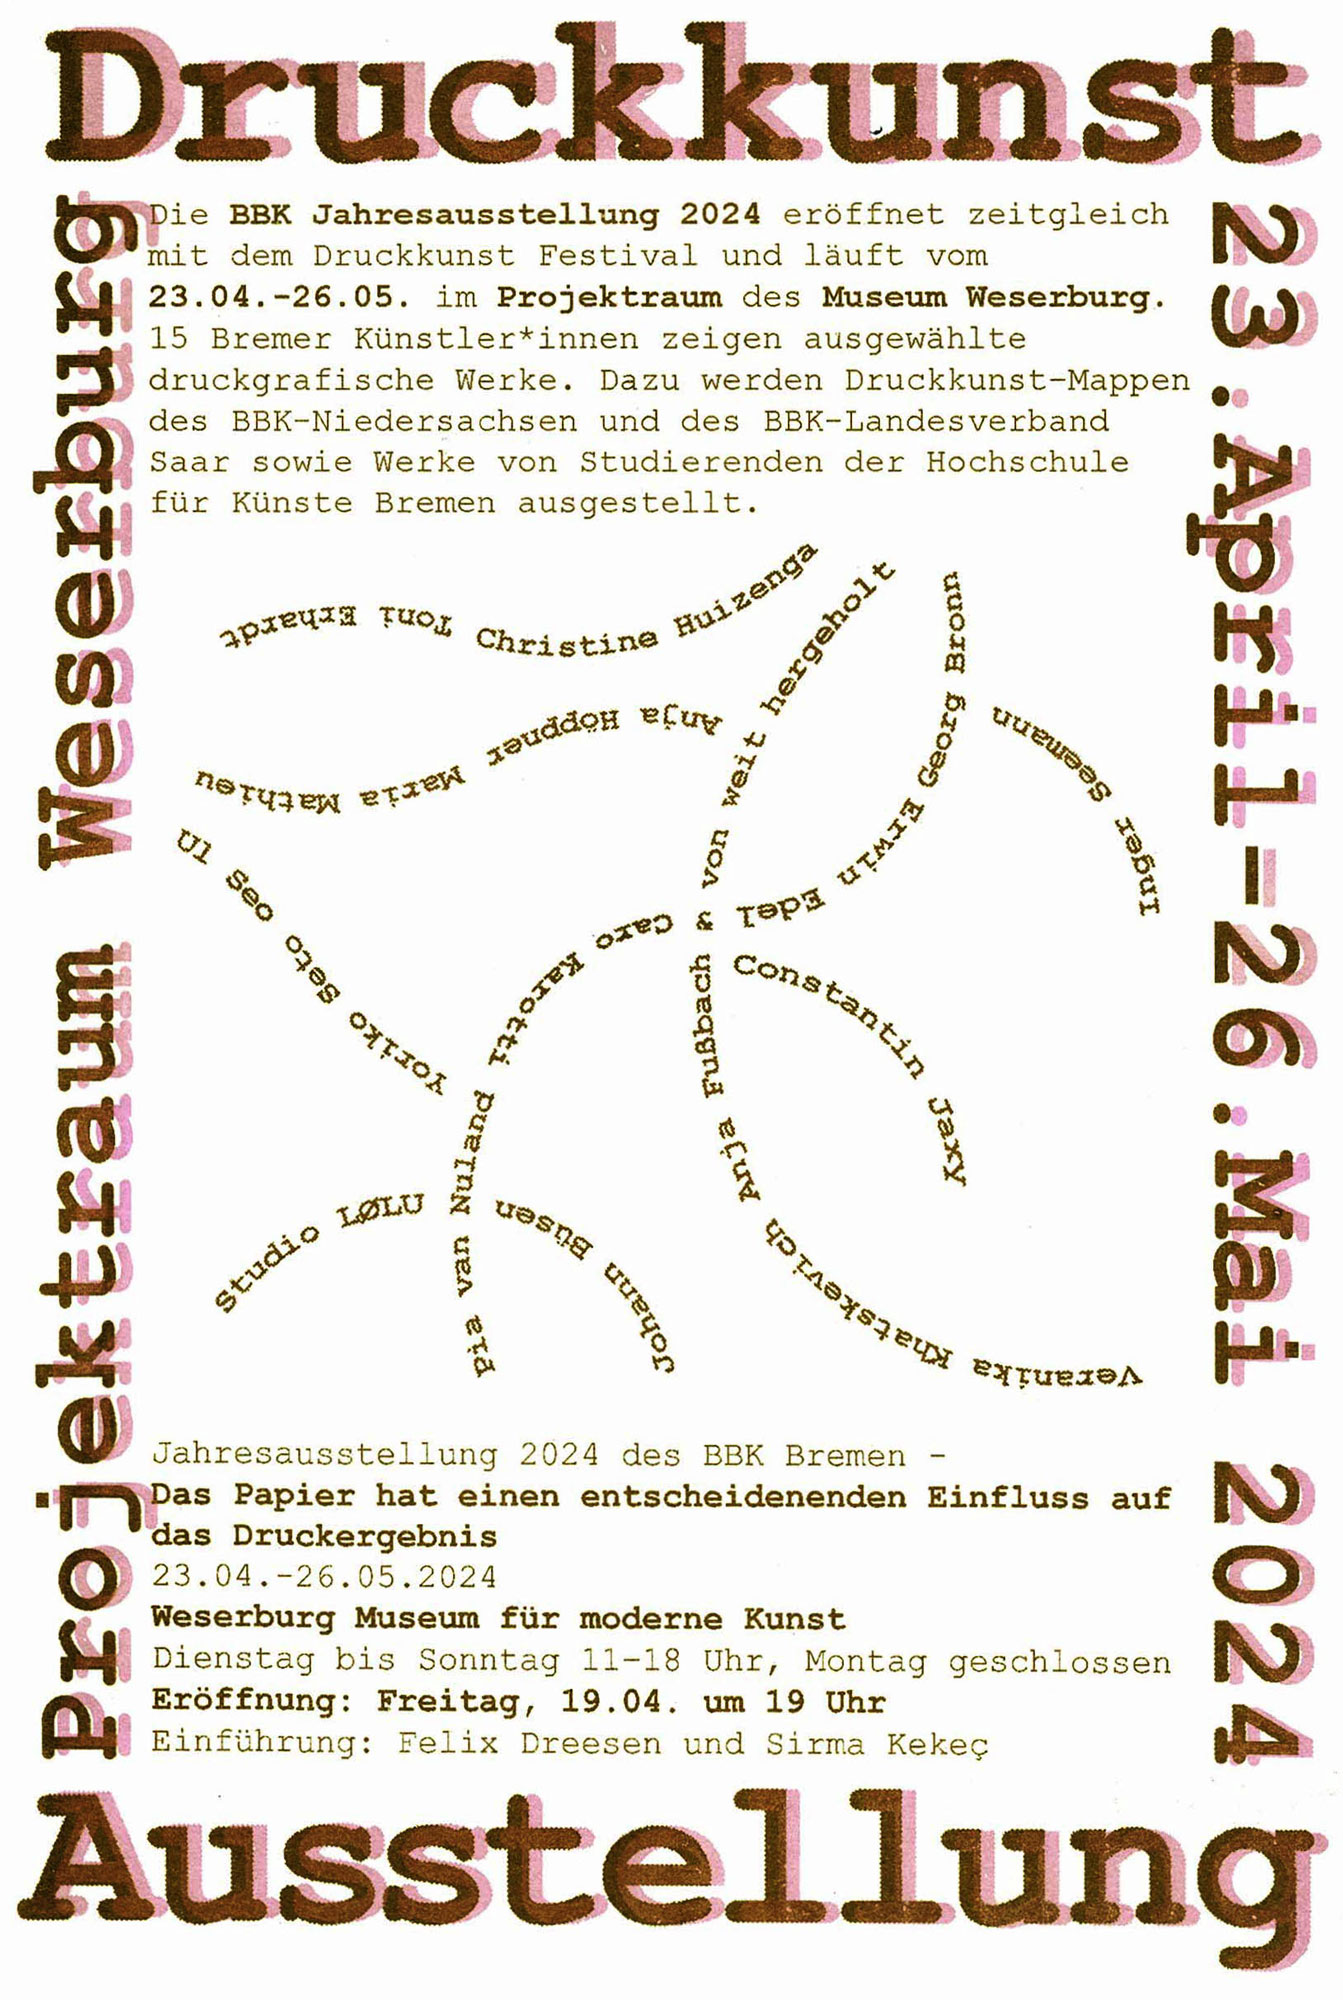 Jahresausstellung 2024 des BBK Bremen in der Weserburg – Museum für moderne Kunst: „Das Papier hat einen entscheidenden Einfluss auf das Druckergebnis“